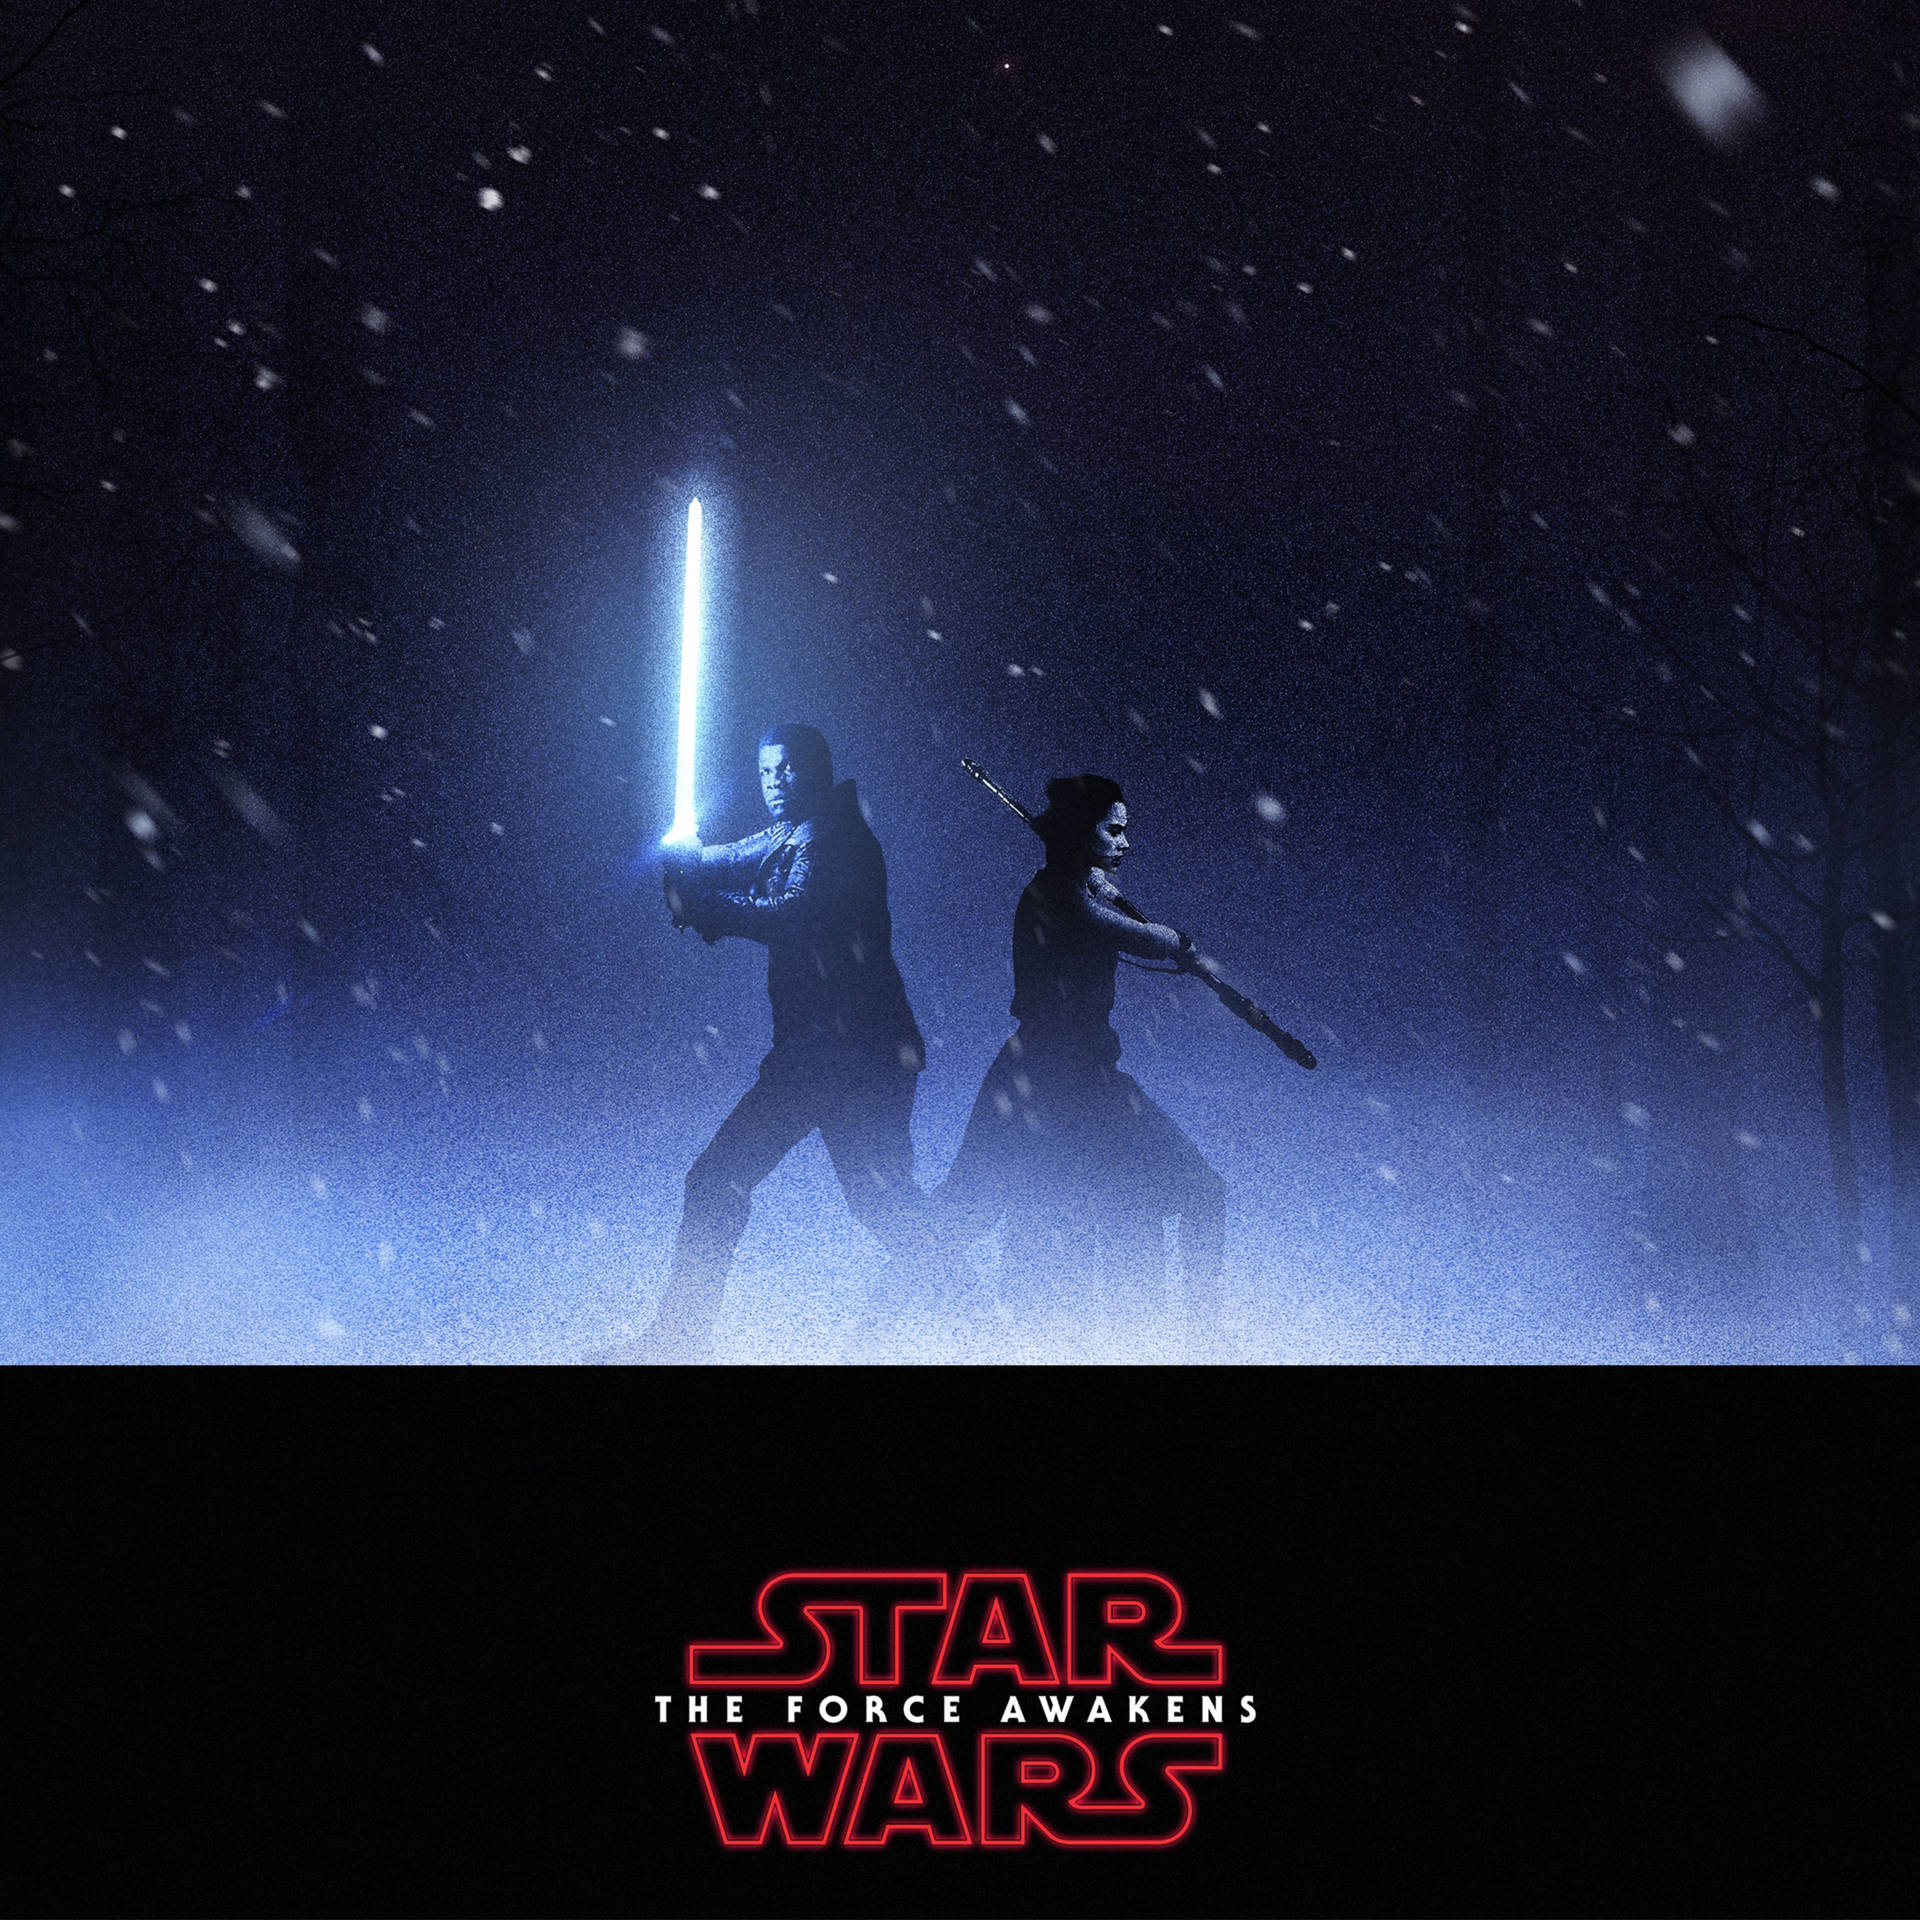 Star Wars Ipad Rey And Finn